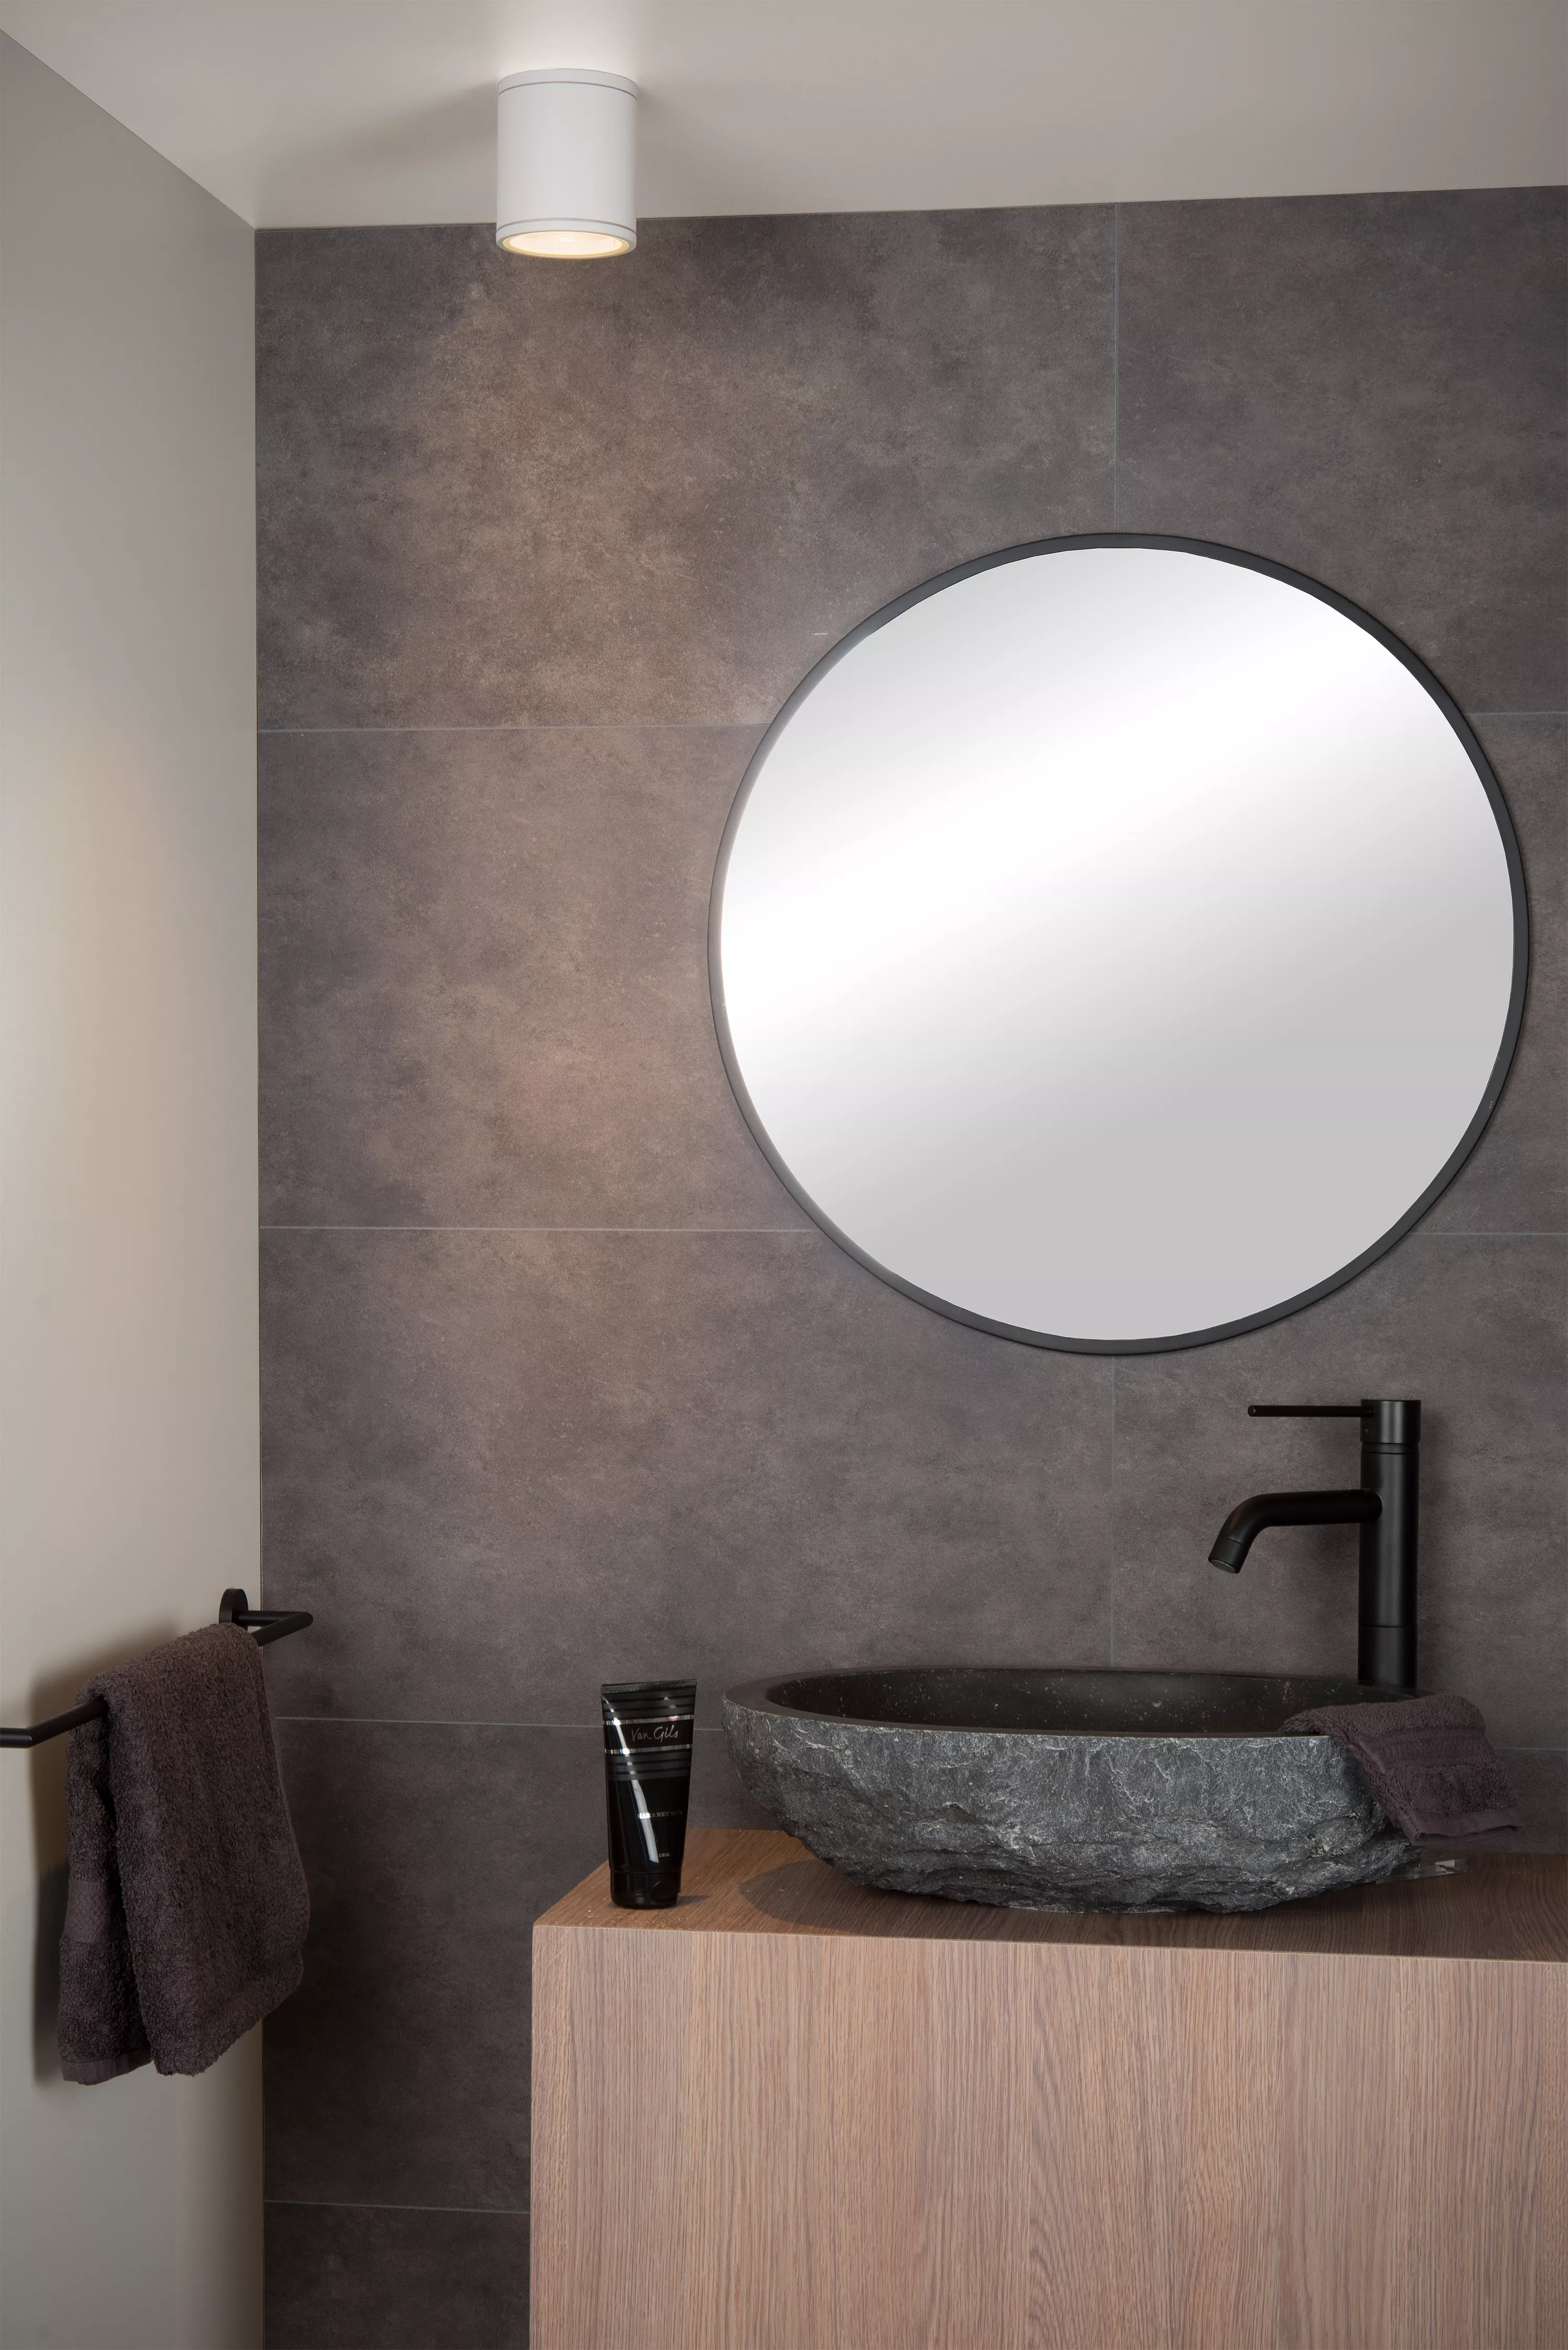 Jednoduché stropné bodové svetlo v čiernom a bielom vyhotovení, ktoré sa skvele hodí do kúpeľne vďaka vysokému krytiu.